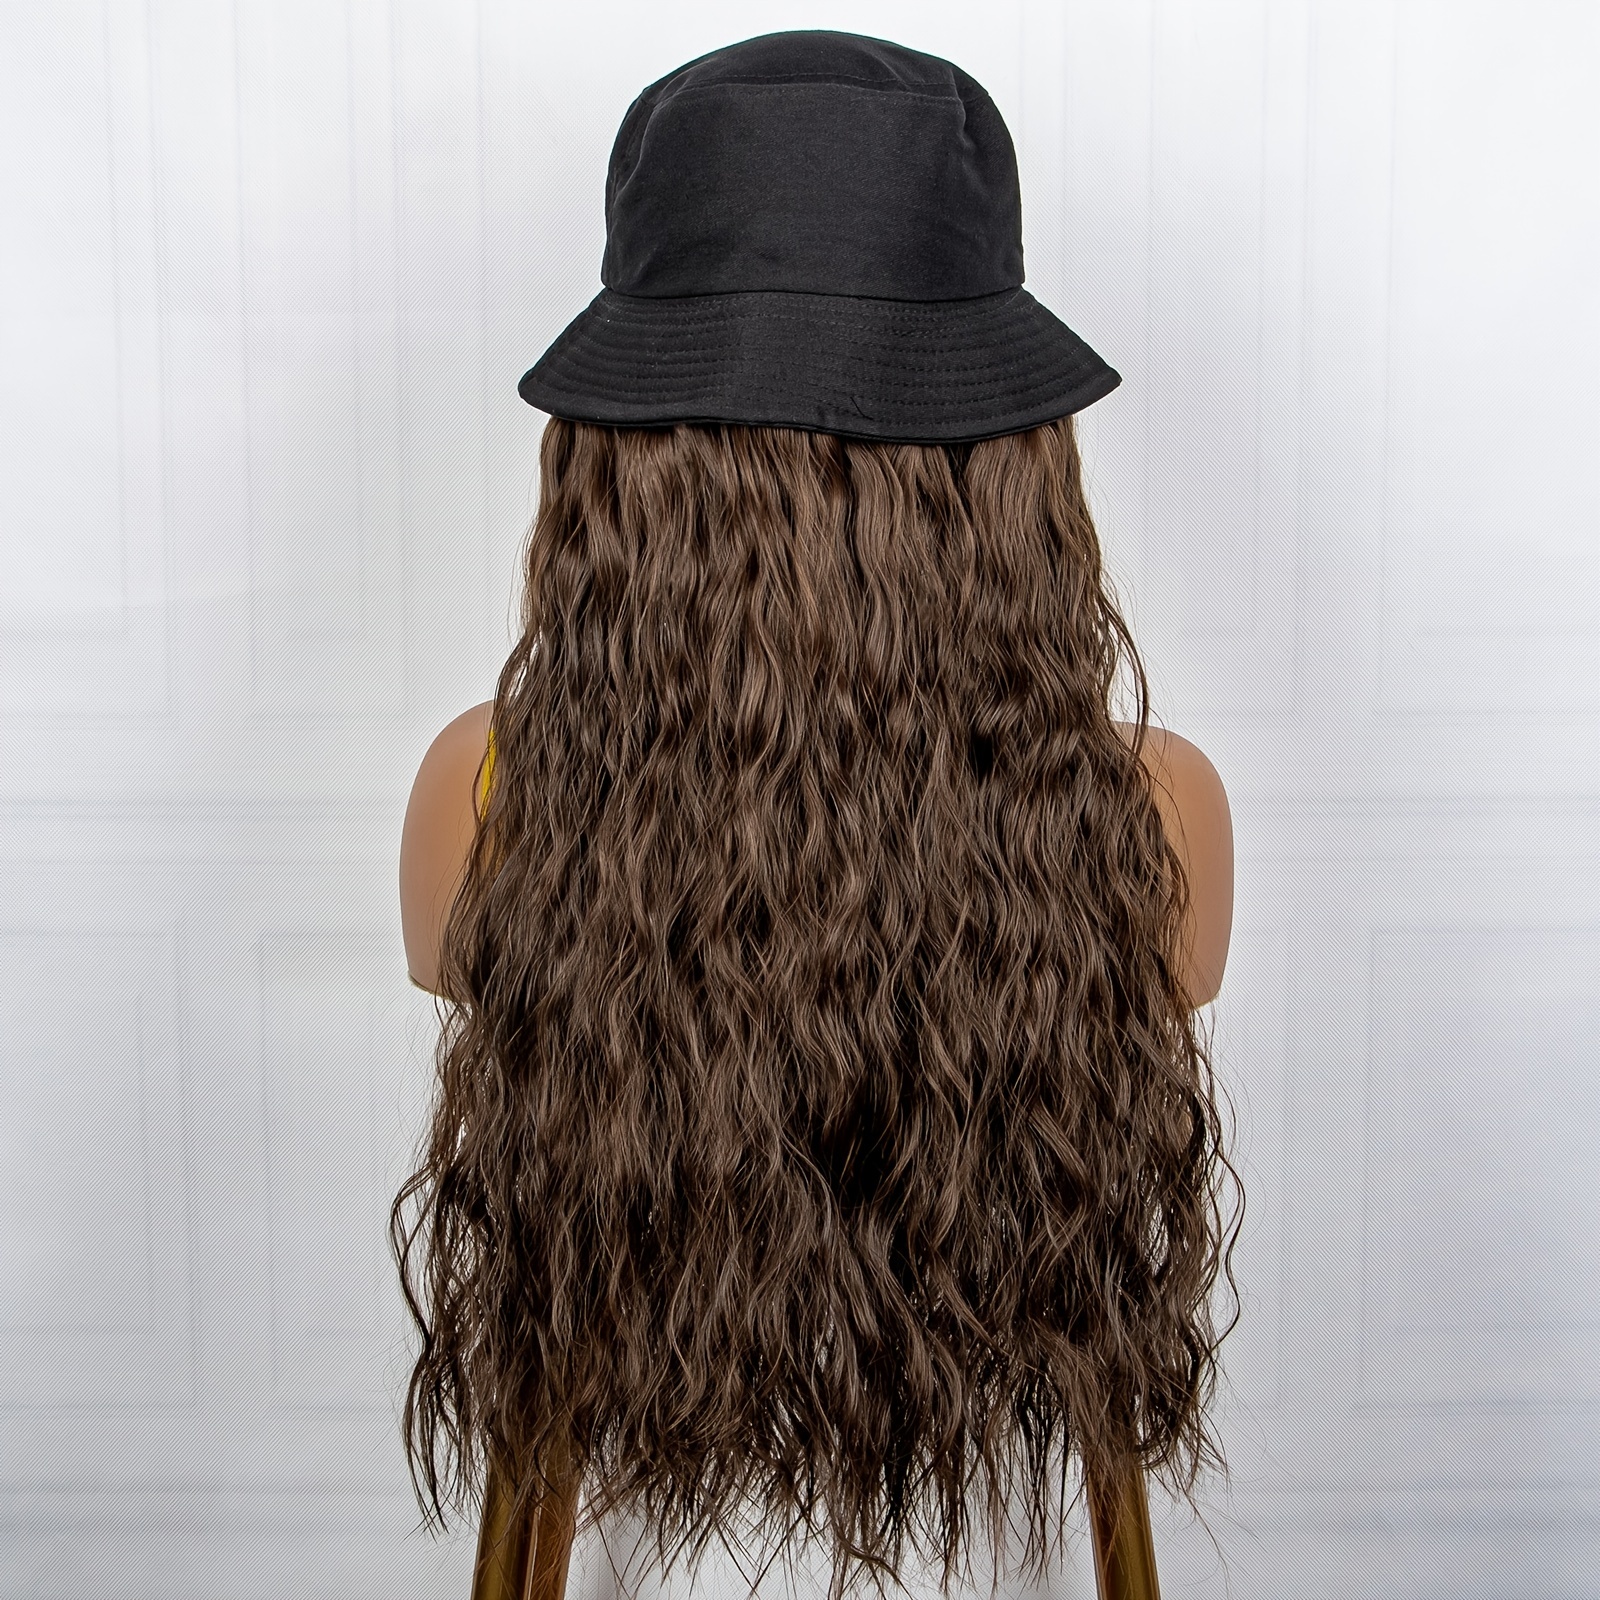 Women's Boutique Hats & Hair